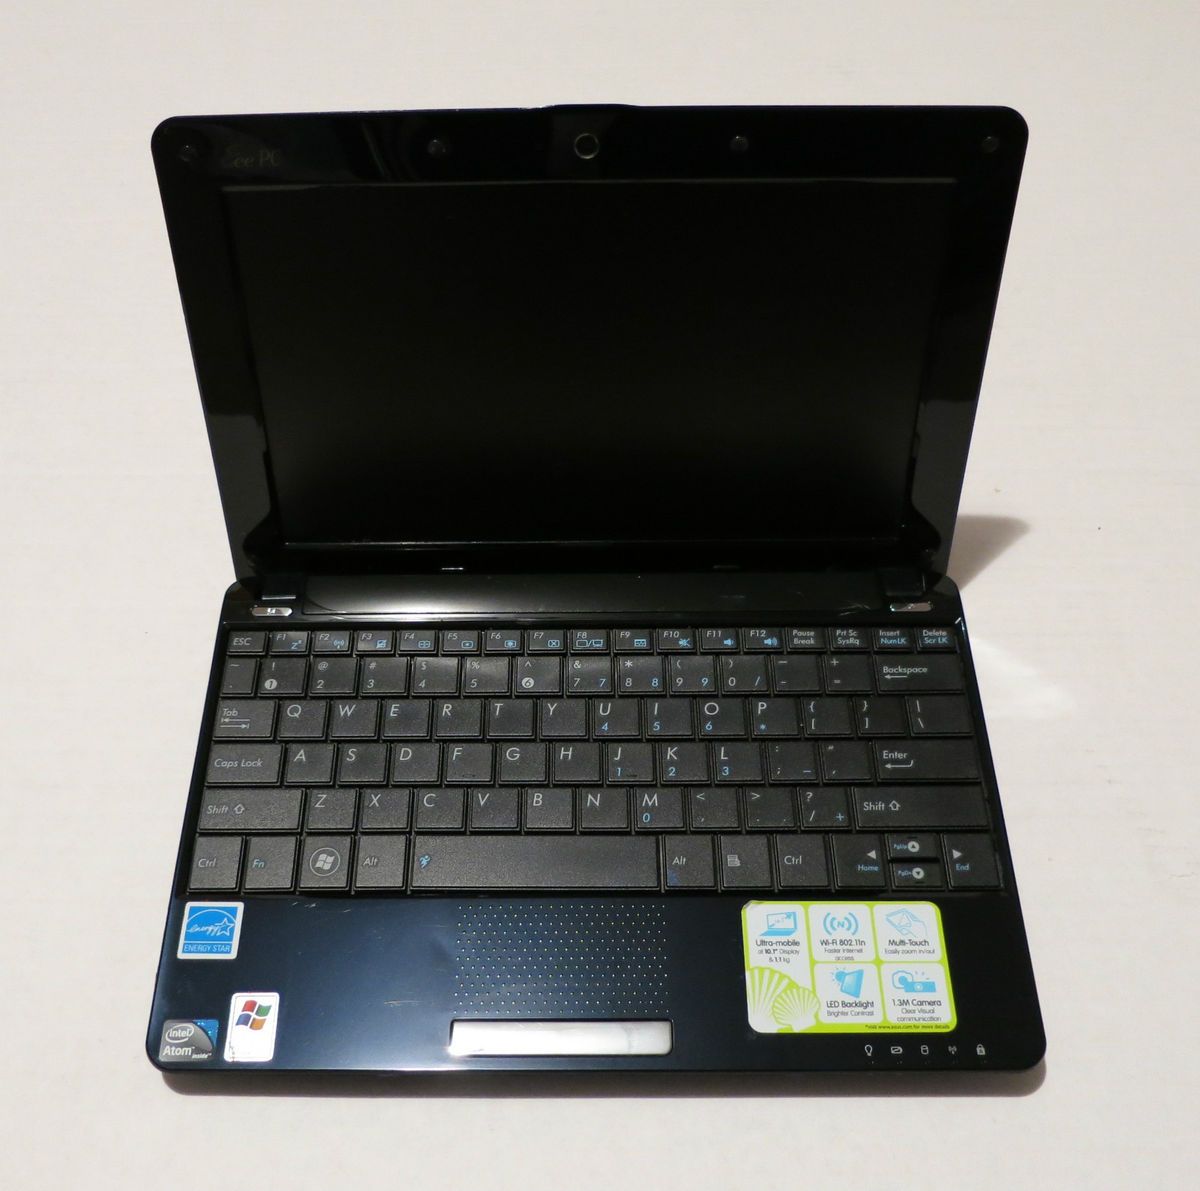 Asus Eee Pc 1005hab Netbook Laptop Blue 1005 Hab 1005hab Blu001x As Is On Popscreen